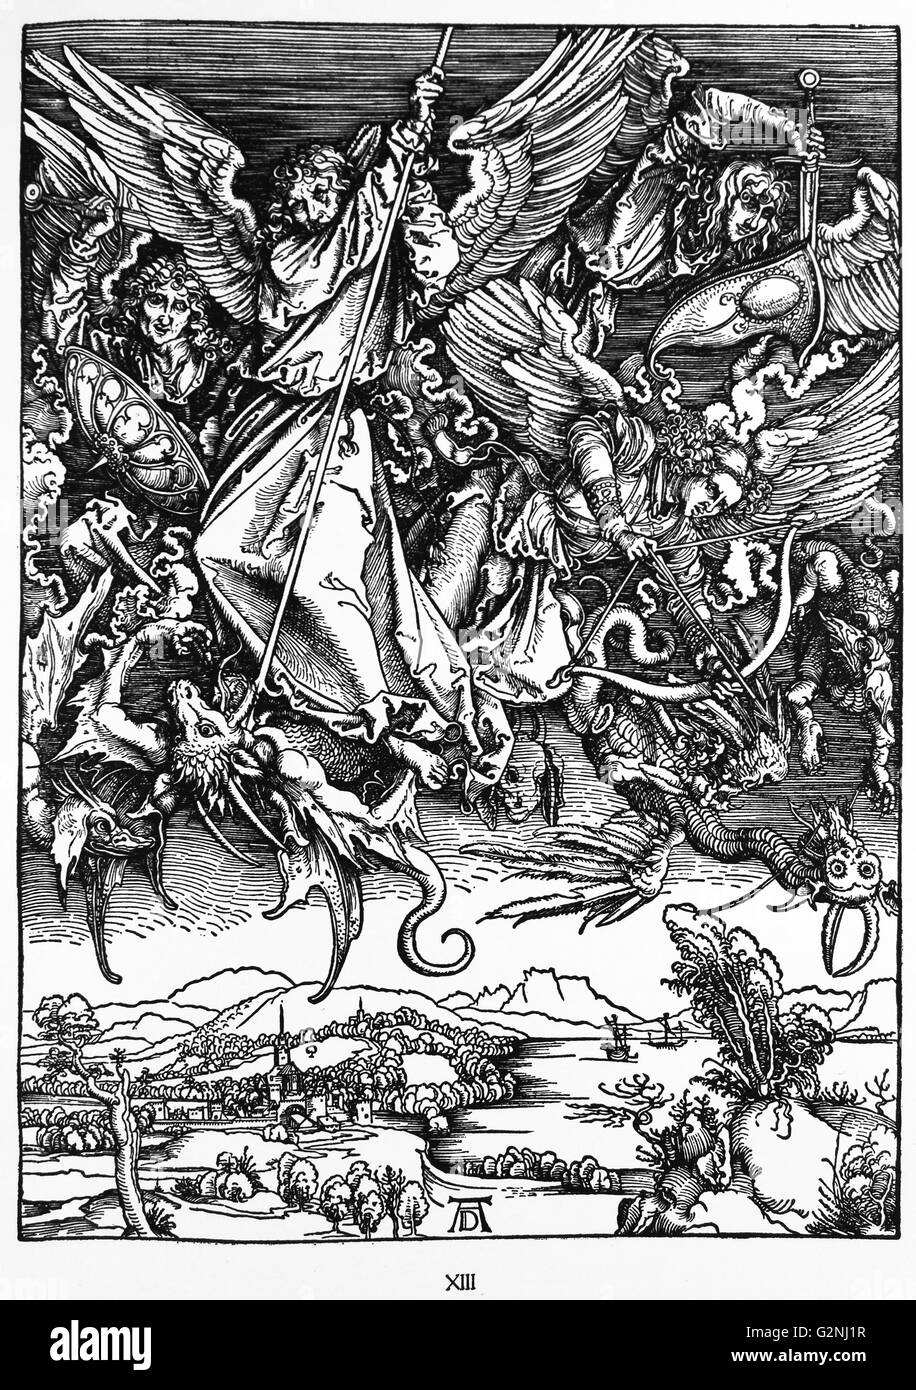 Martin Lutero: Prefazione alla rivelazione di Giovanni ( 1522): Vorrede zur Offenbarung Johannes (1522). Apocalisse nelle figure; Xilografia da Albrecht Dürer; San Michele lotta contro il drago Foto Stock